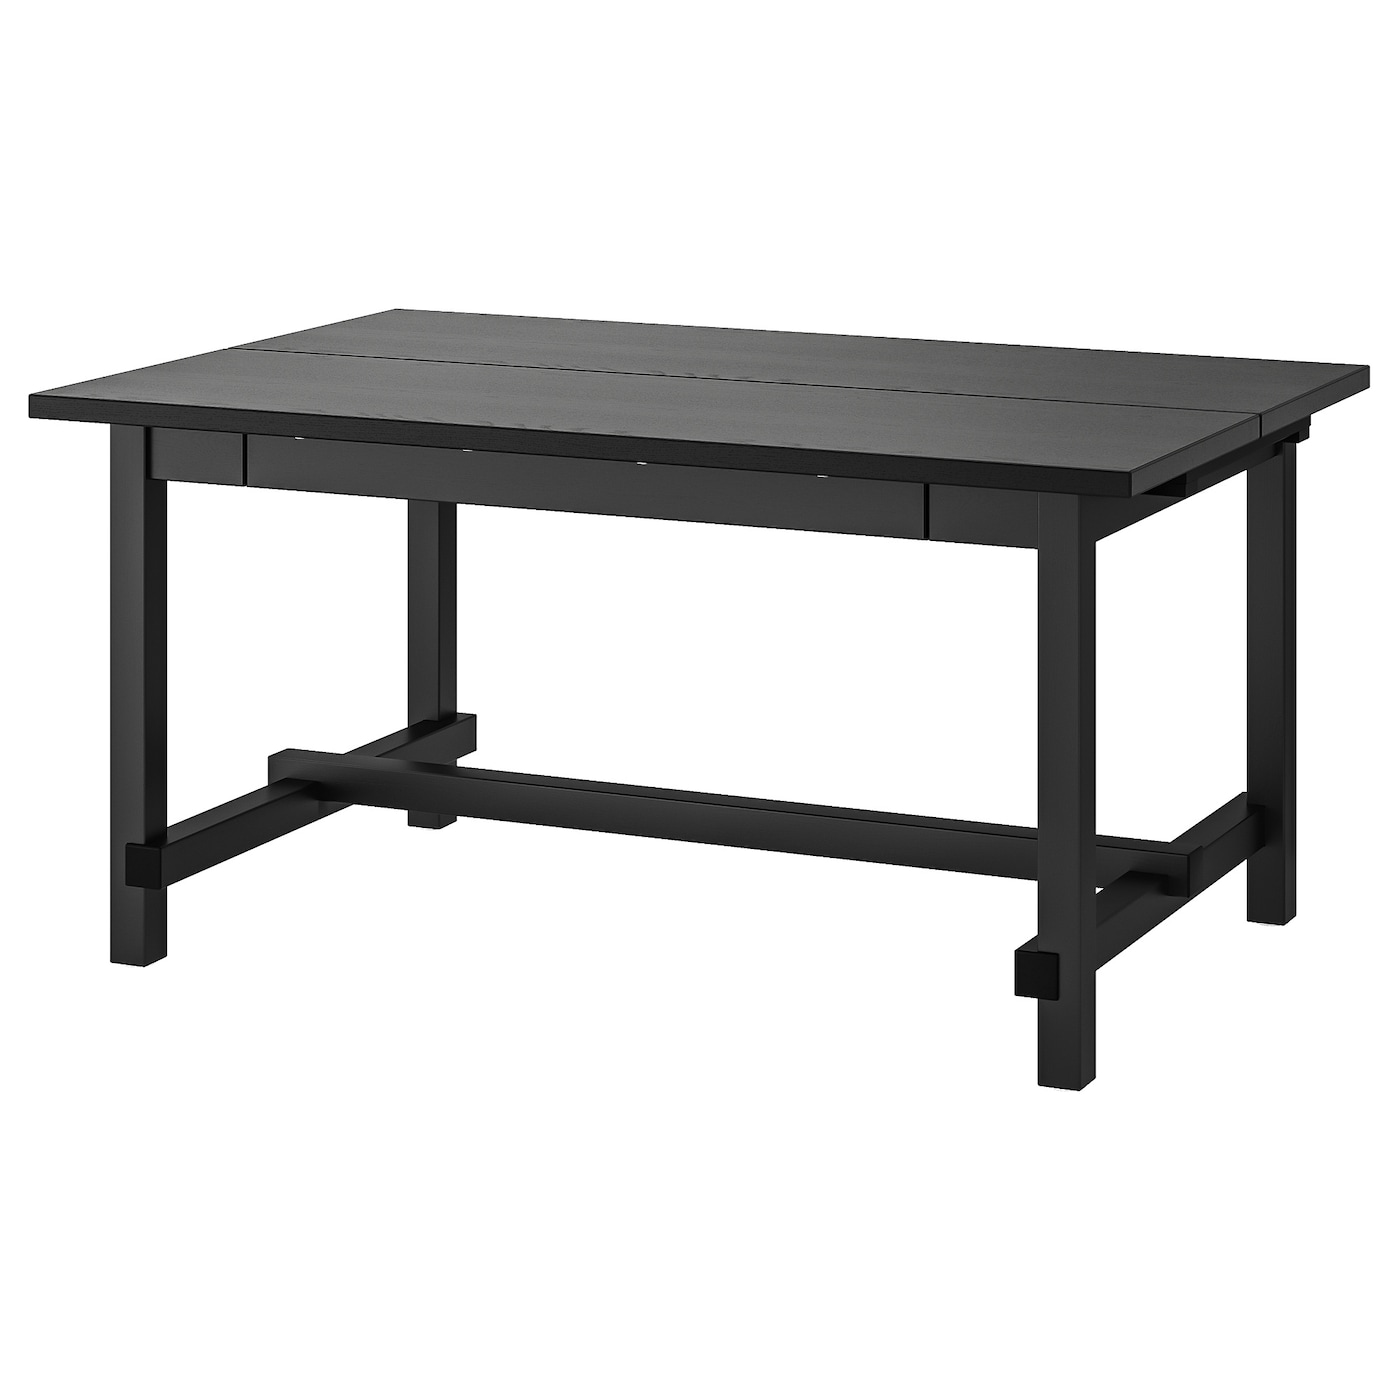 Раздвижной обеденный стол - NORDVIKEN IKEA, 223/95/75 см, чёрный, НОРДВИКЕН ИКЕА